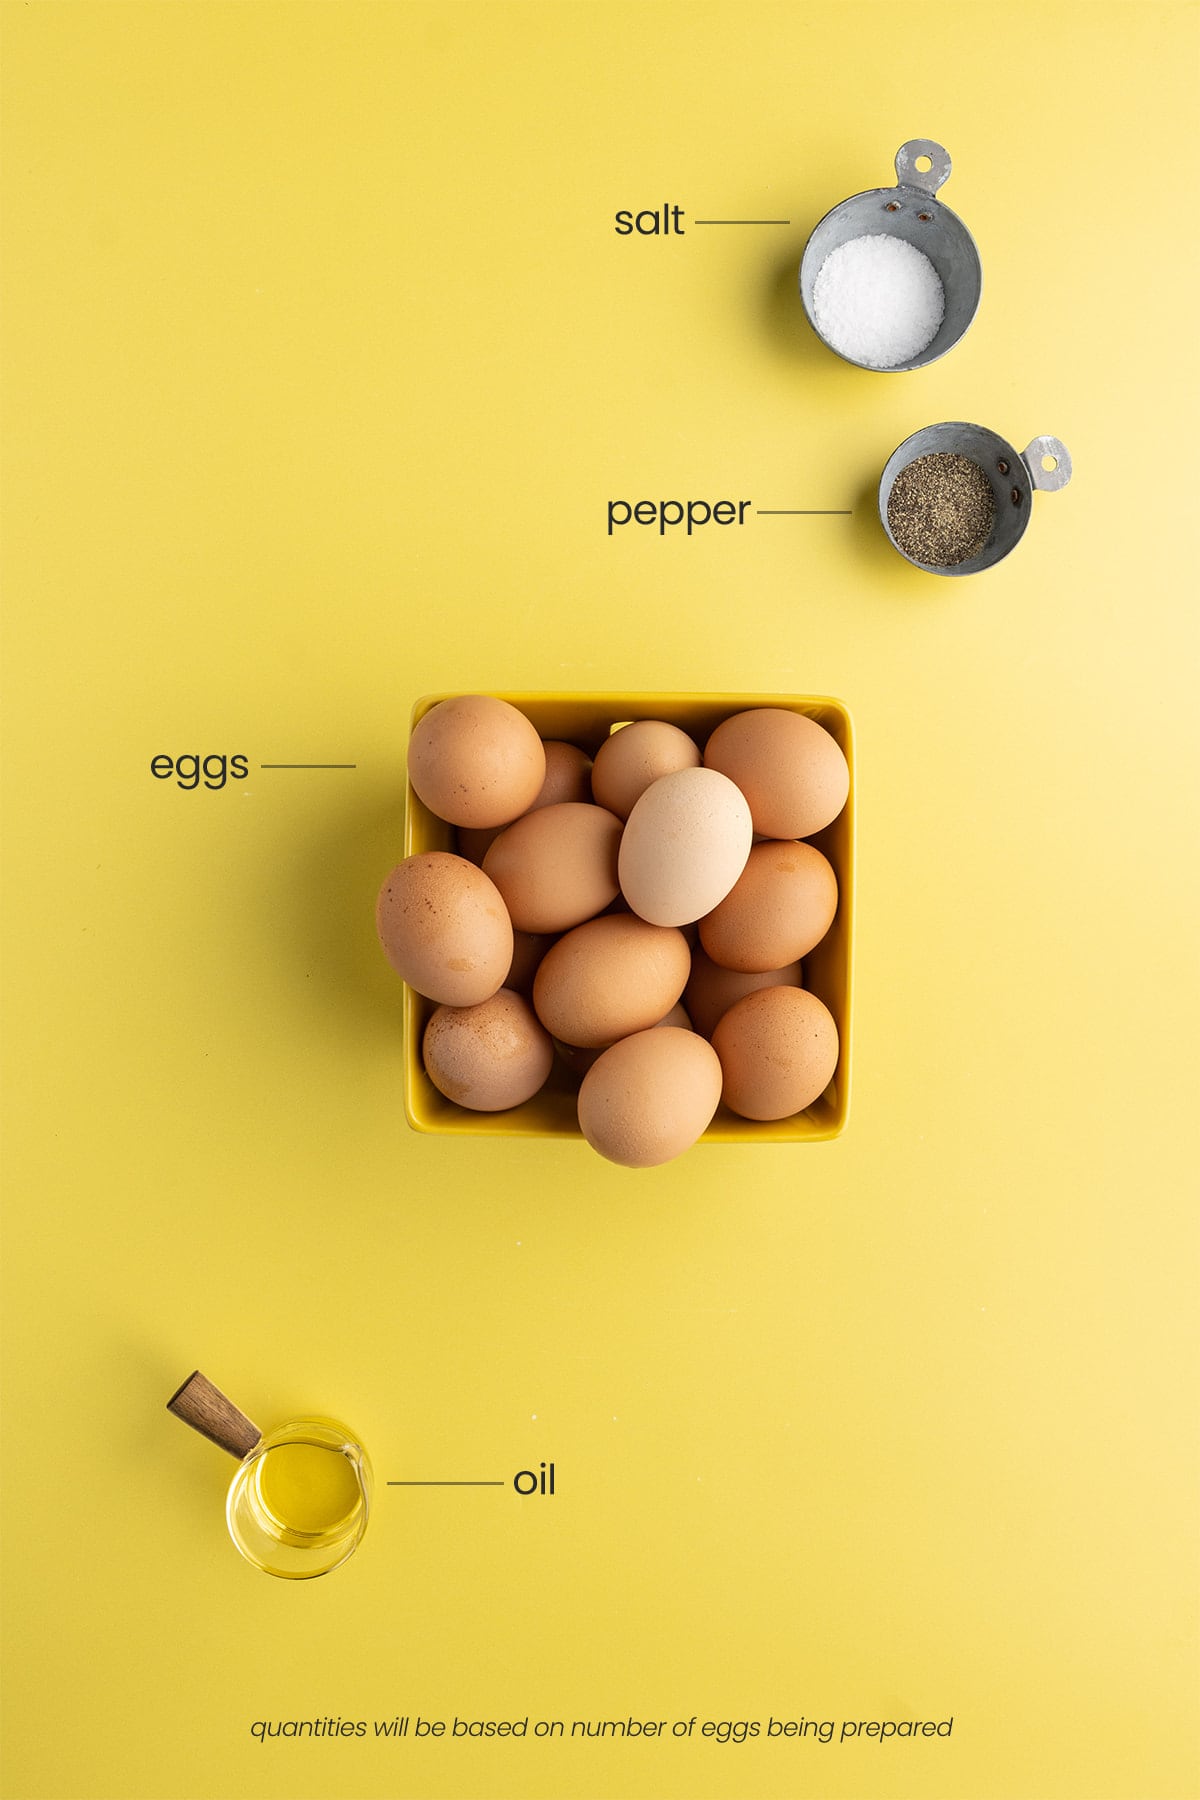 Over hard egg ingredients including olive oil, eggs, salt, and pepper